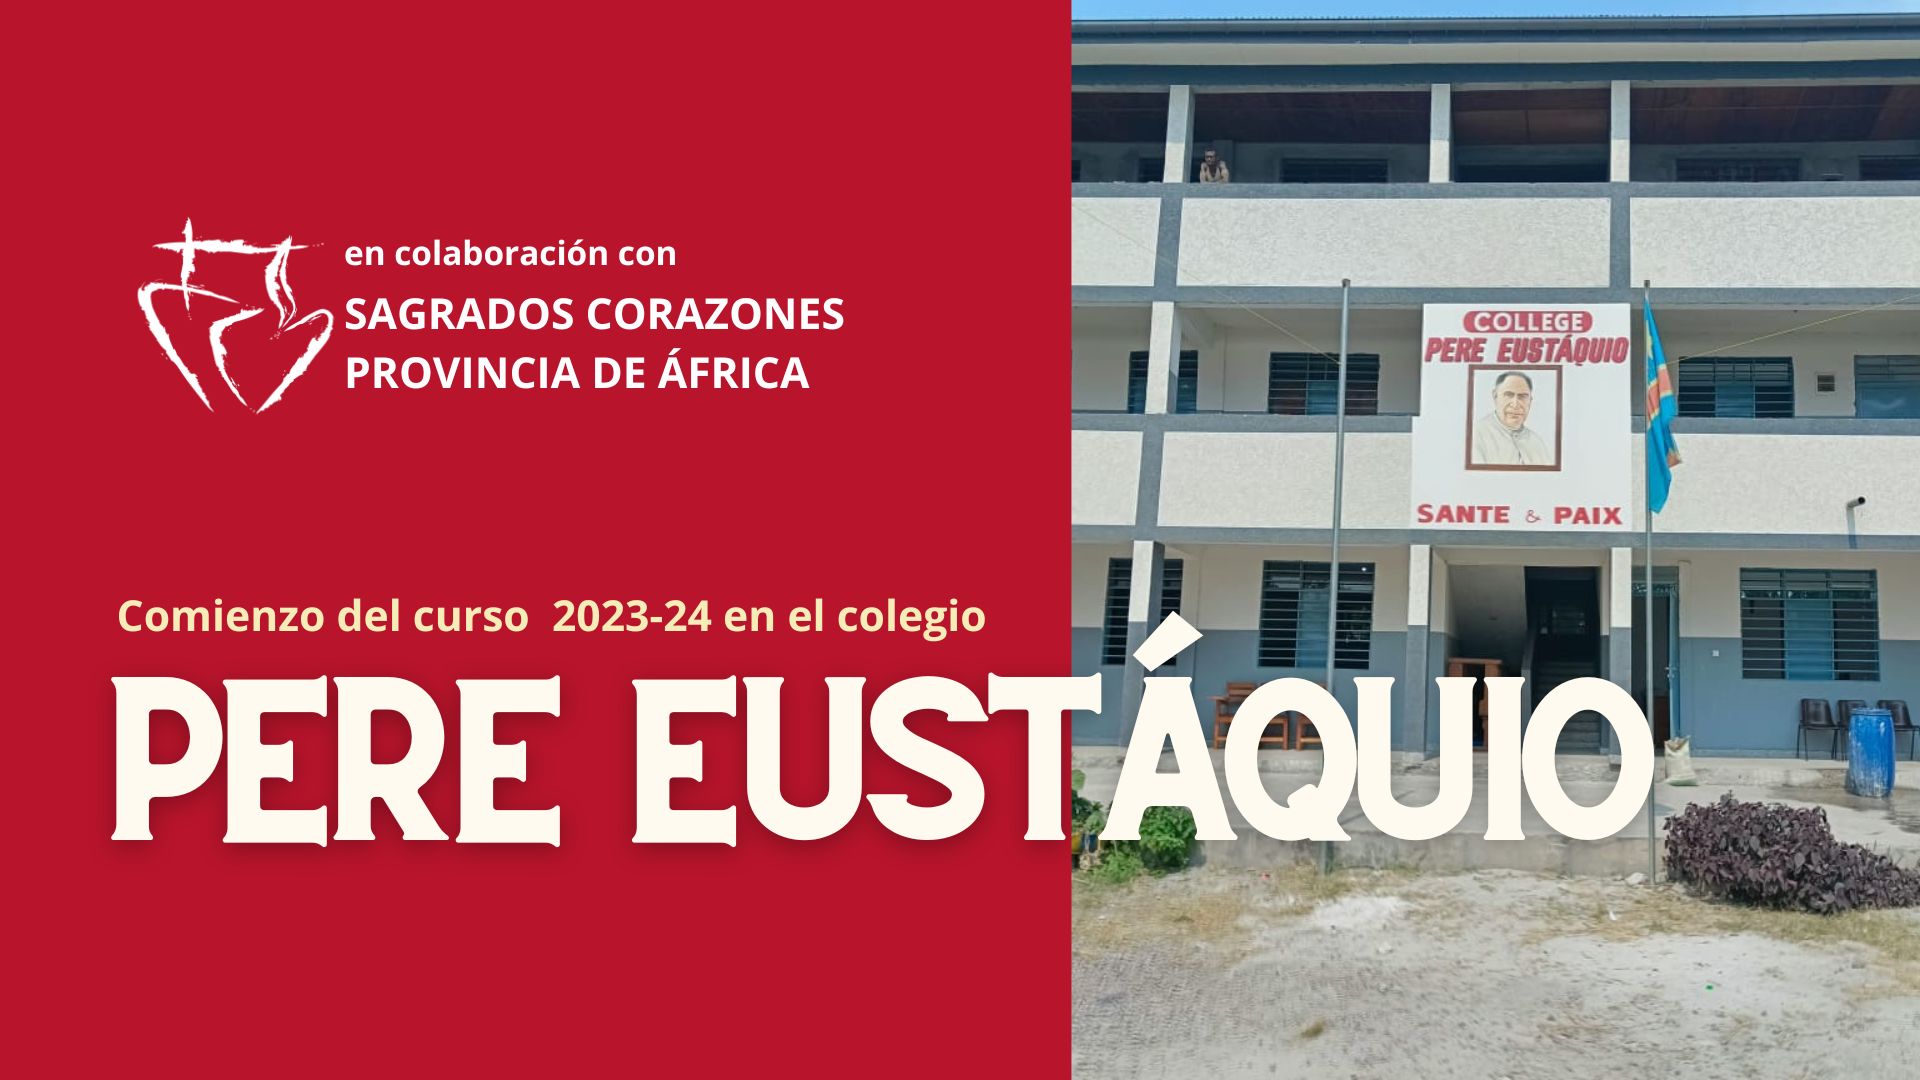 Comienzo del curso 2023-24 en el colegio Padre Eustaquio (Kinshasa, R.D. Congo)